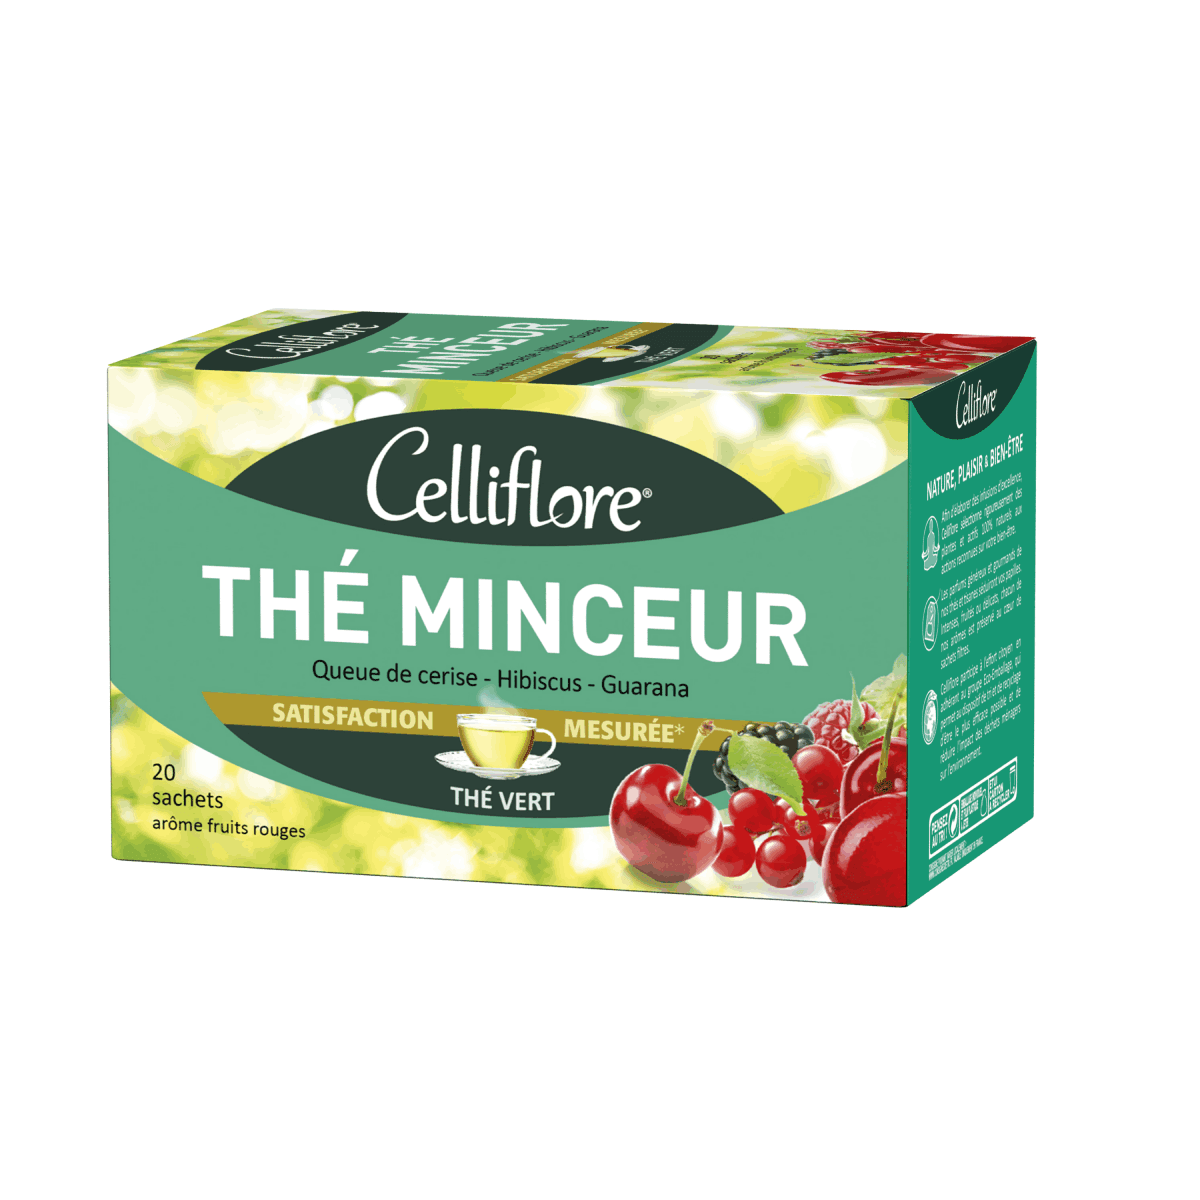 Celliflore - The minceur - ORAS OFFICIAL